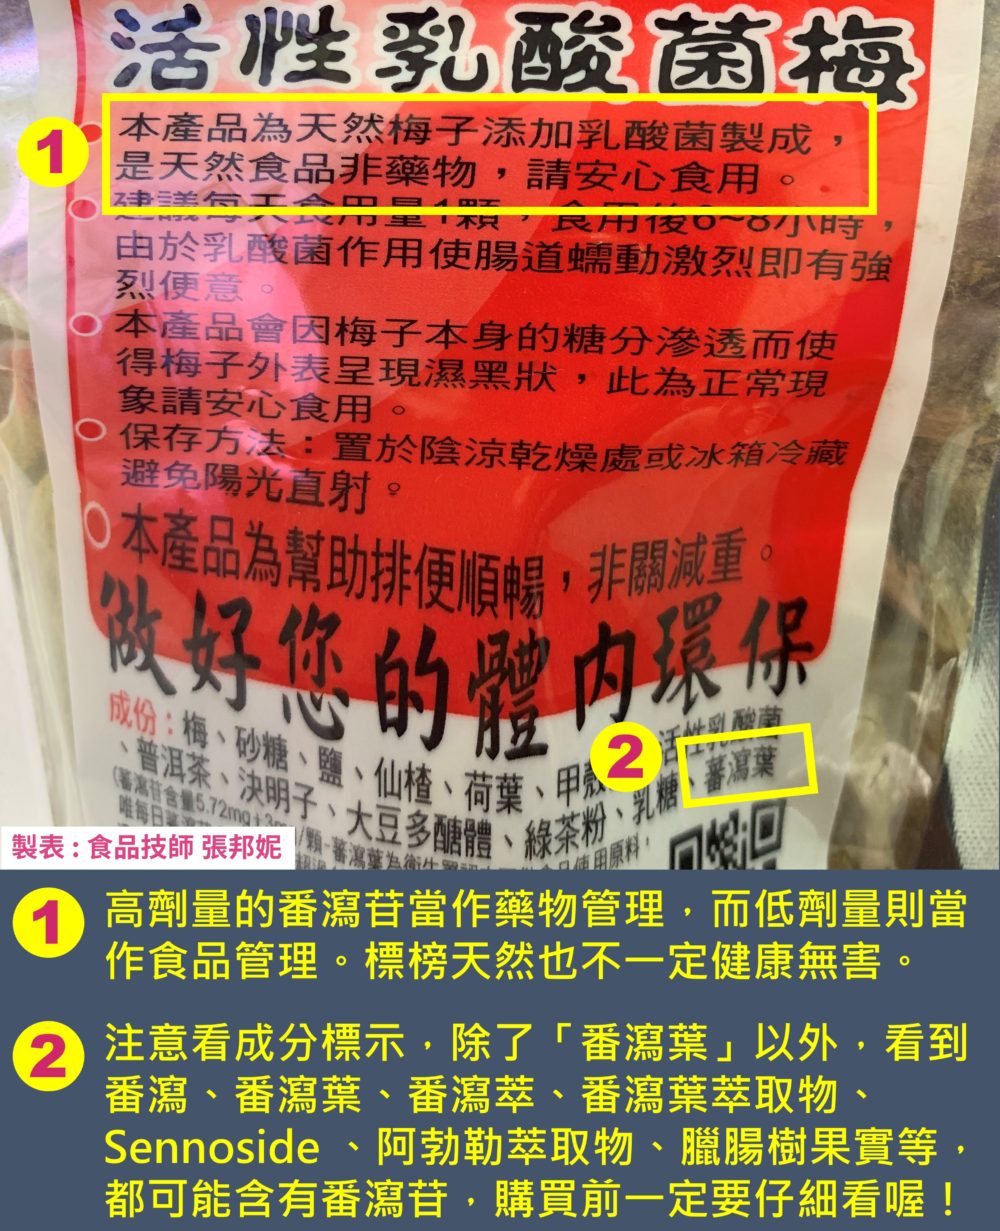 購買乳酸菌梅、便便梅時要注意看標示是否含有「番瀉葉」等助瀉物質，容易產生依賴性